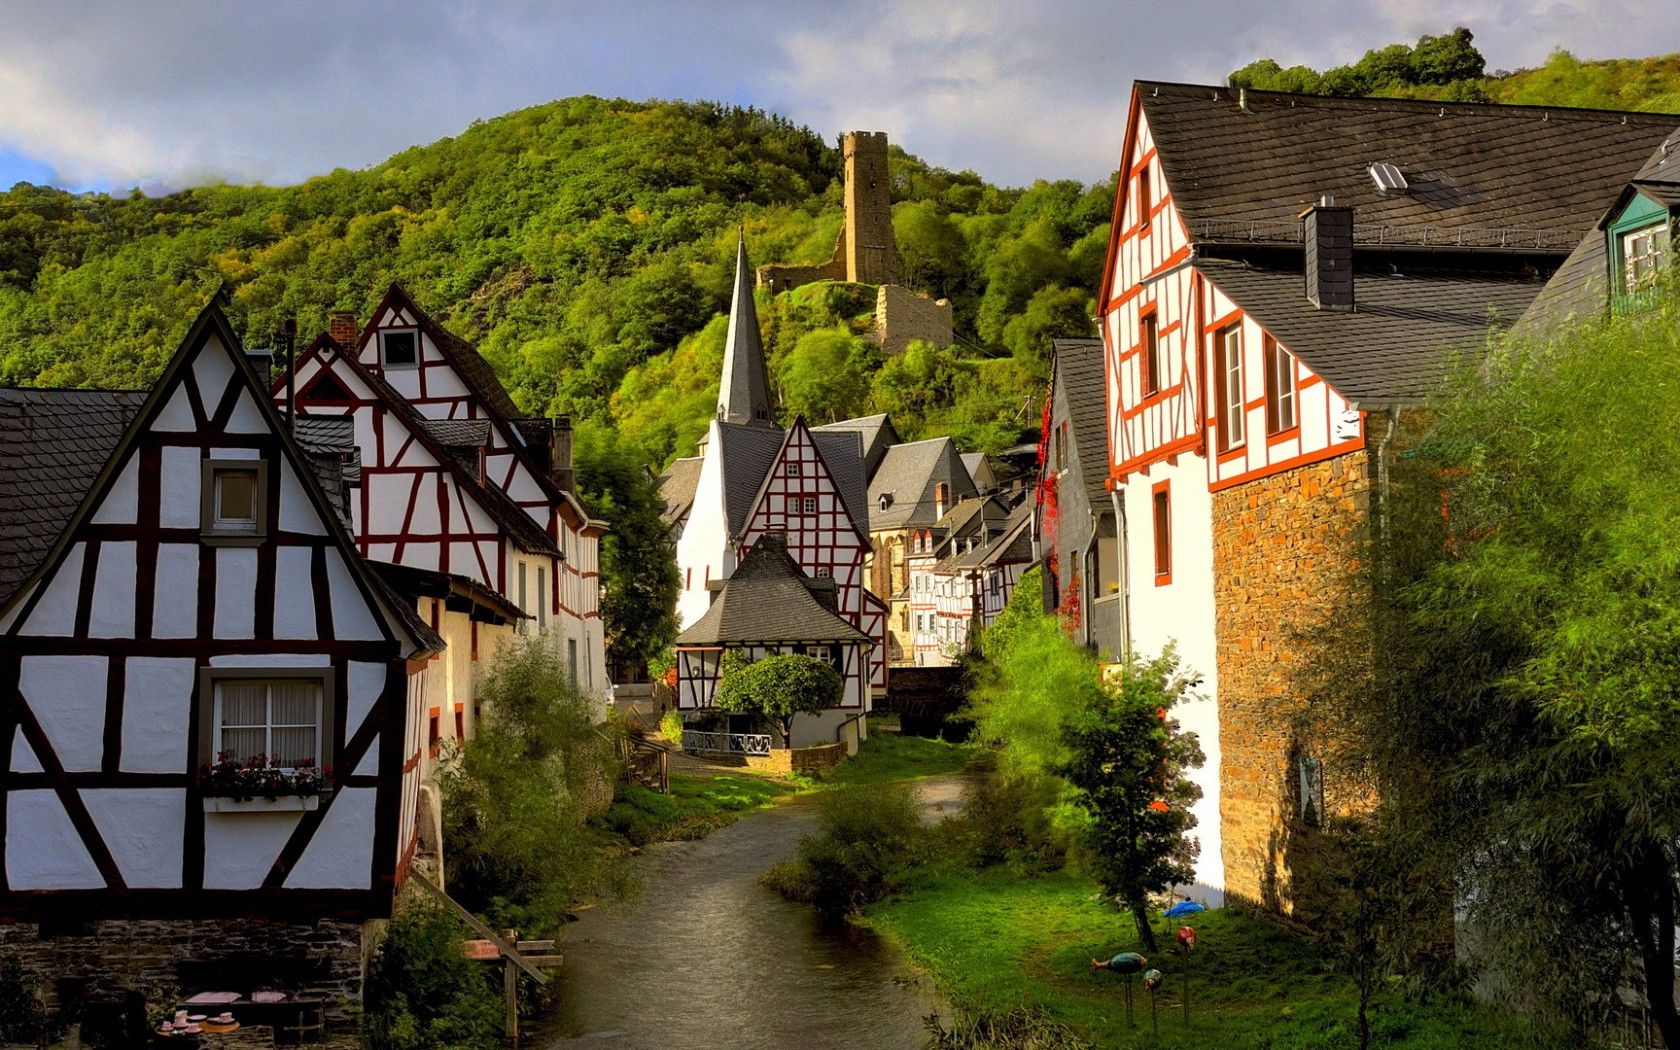 1680x1050 Hd Village Scenery In Germany City Hd Wallpaper